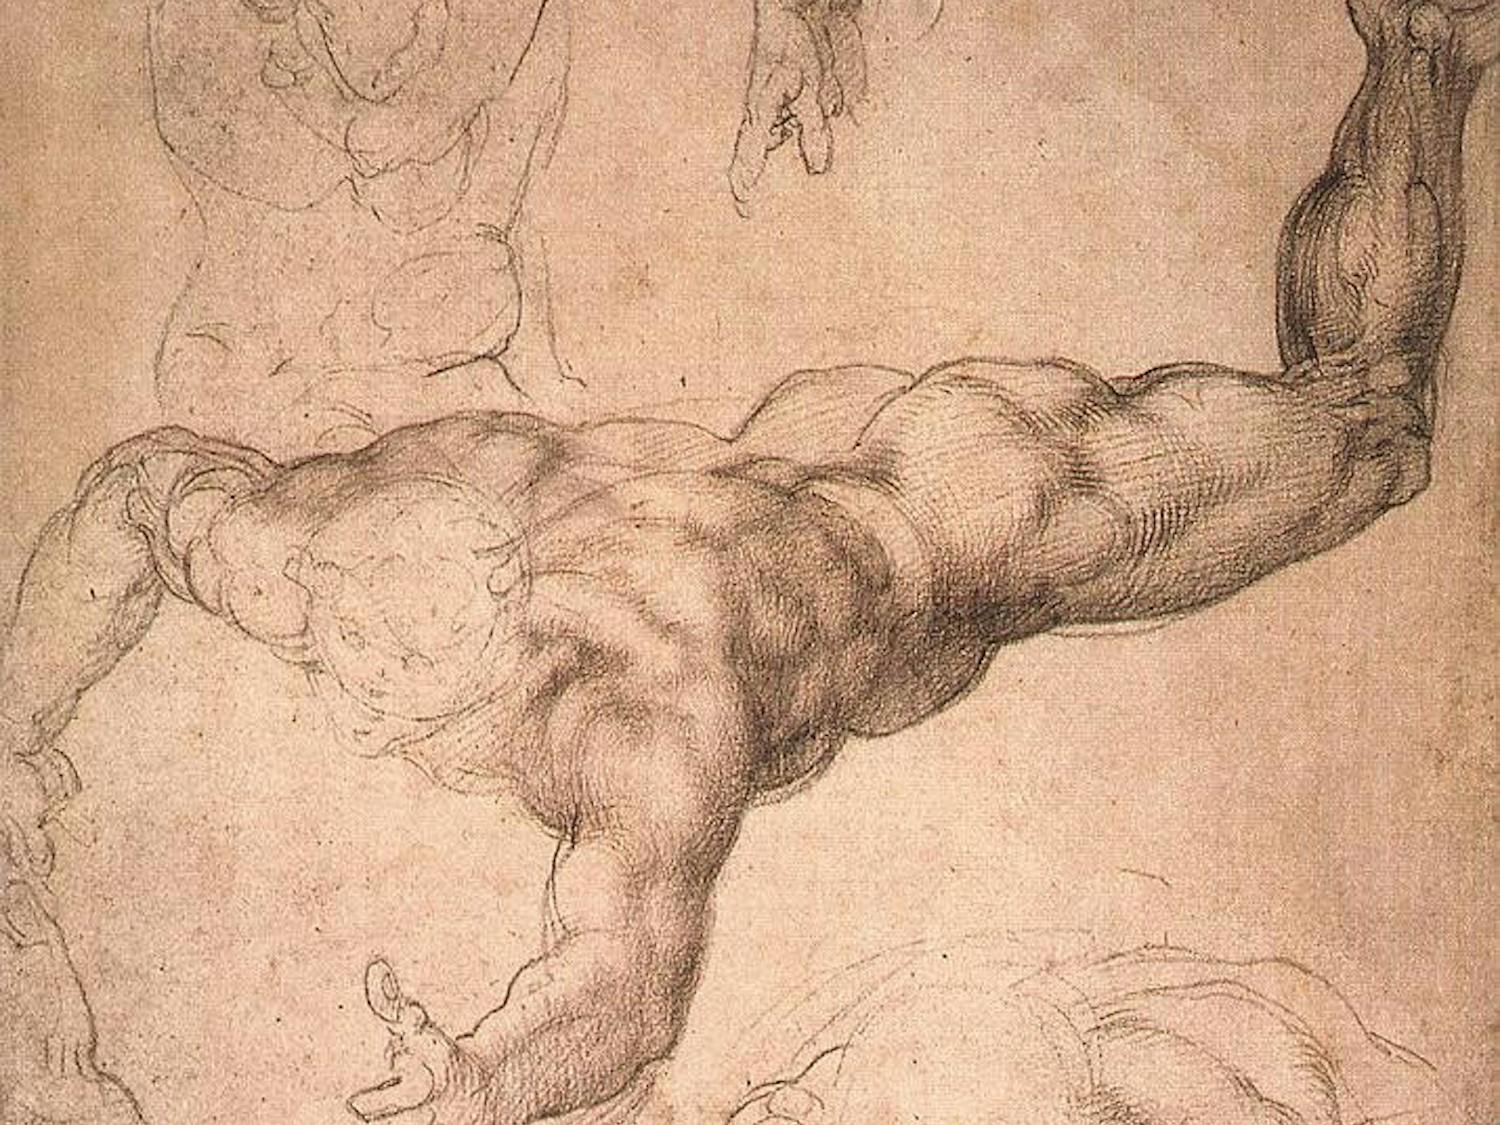 Michelangelo-Drawing-Wikimedia